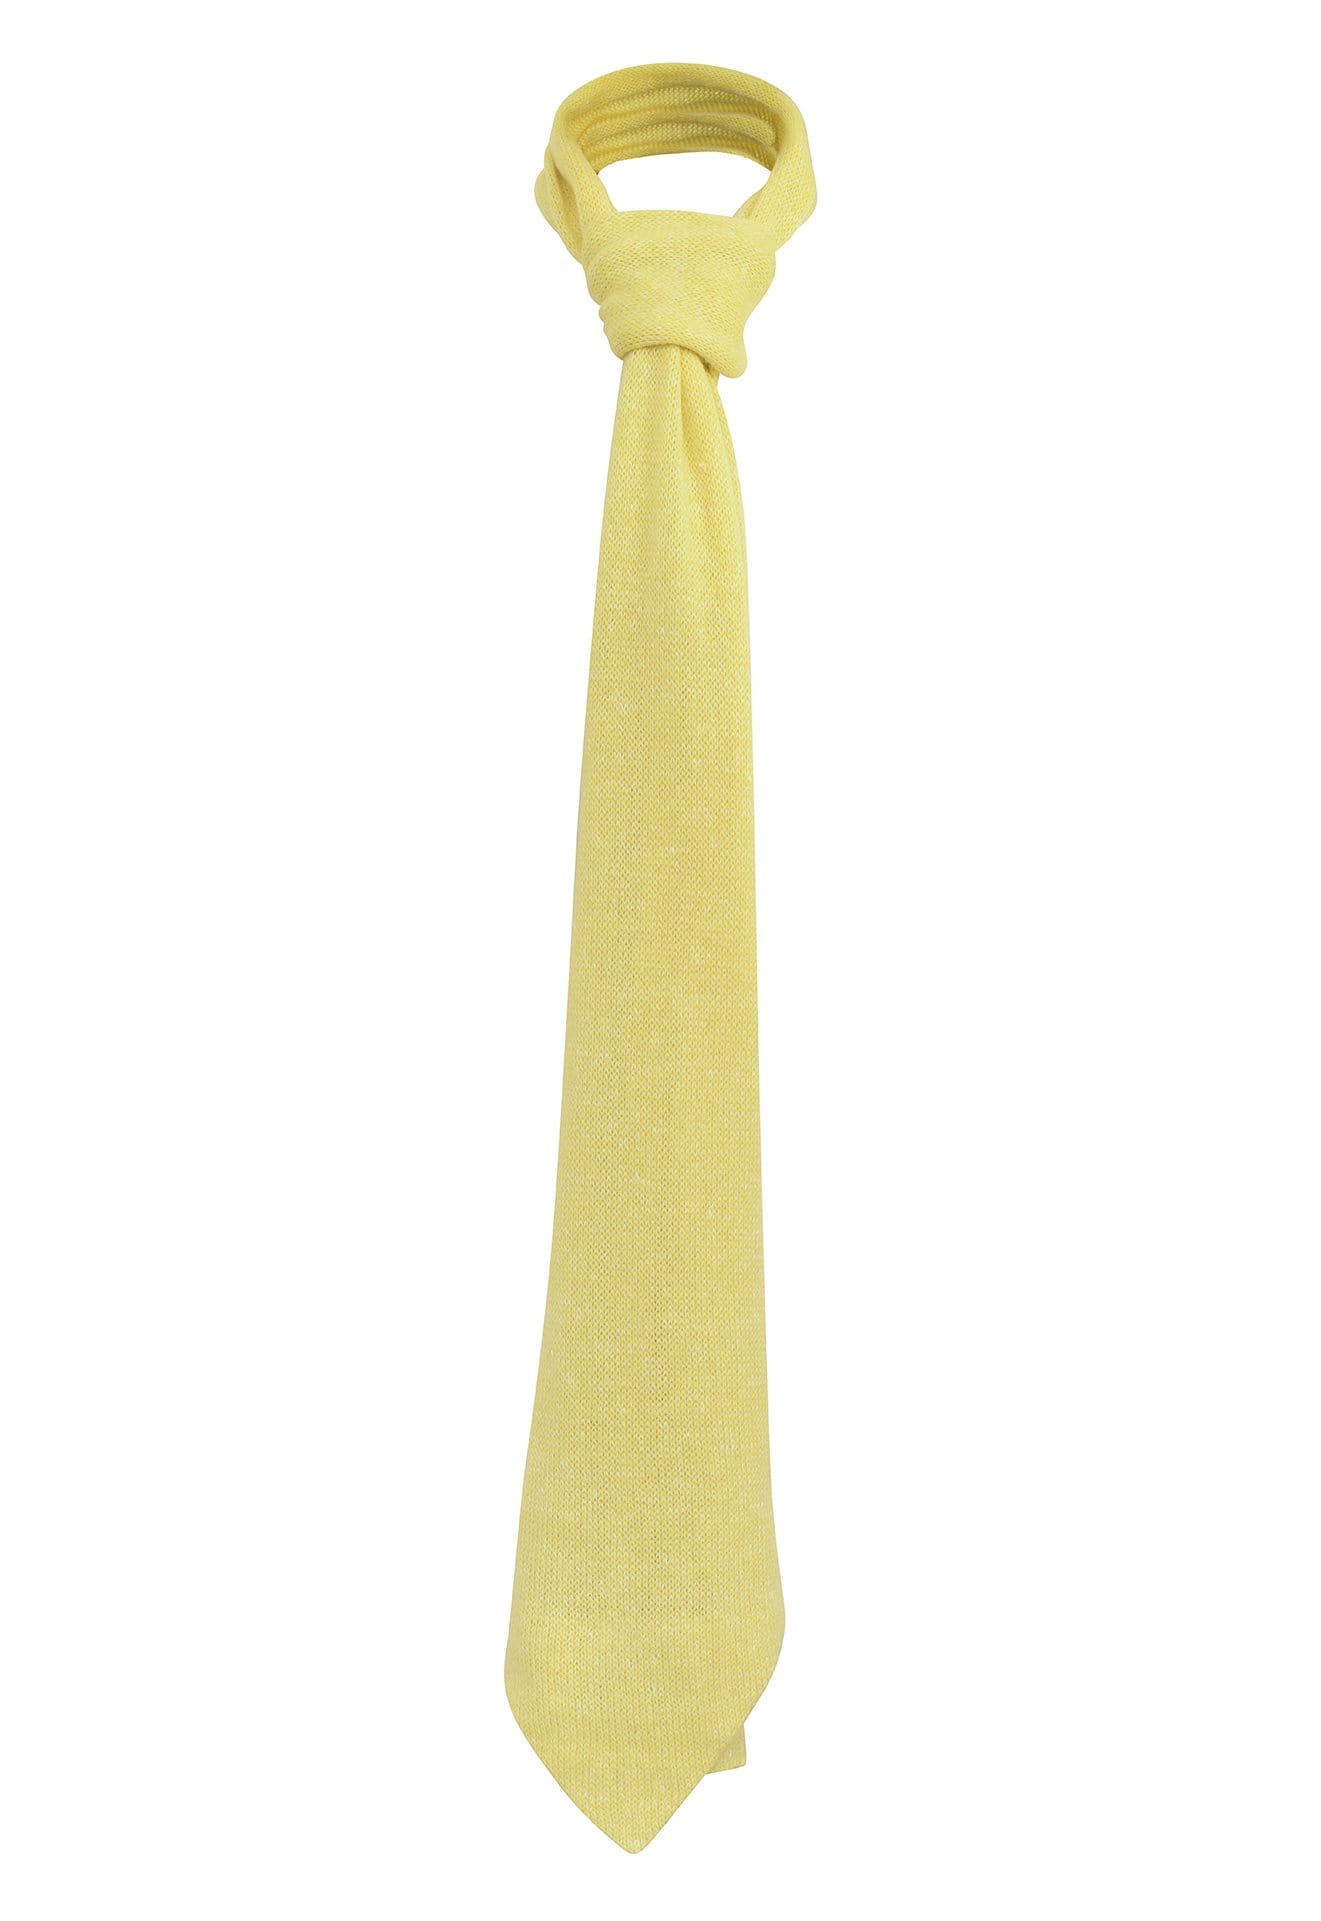 Echarpe à bout cravate jaune soleil tricotée en France 58% cachemire 42% lin